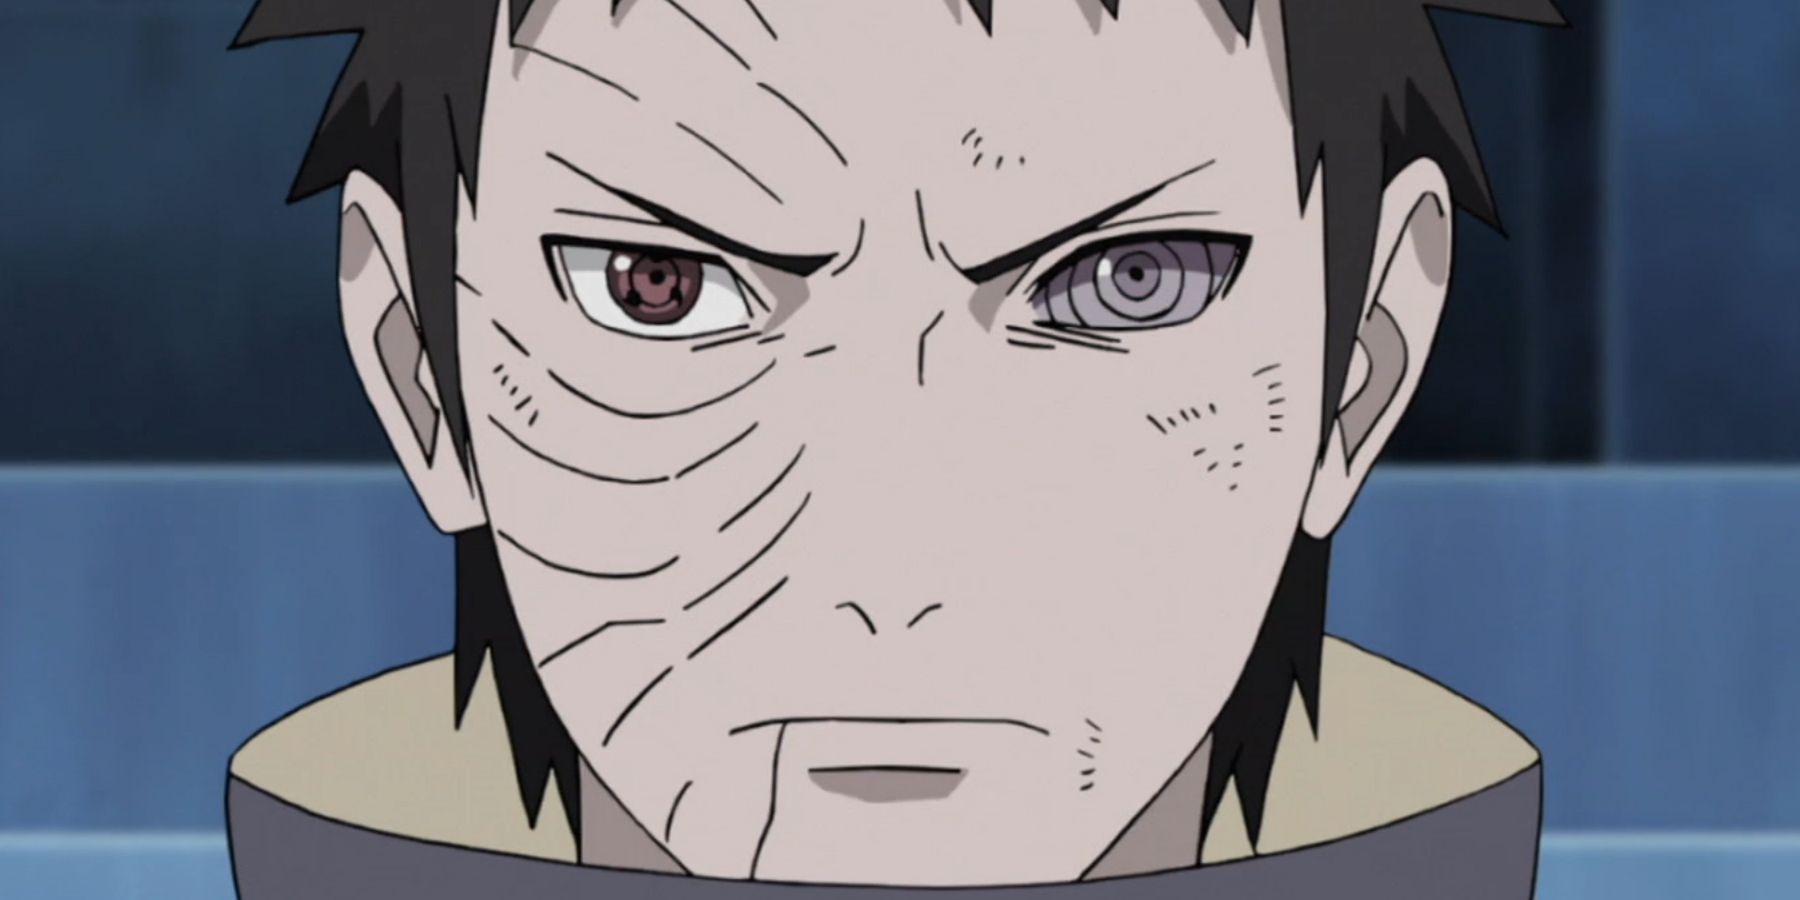 Obito Uchiha stares menacingly ahead in Naruto Shippuden